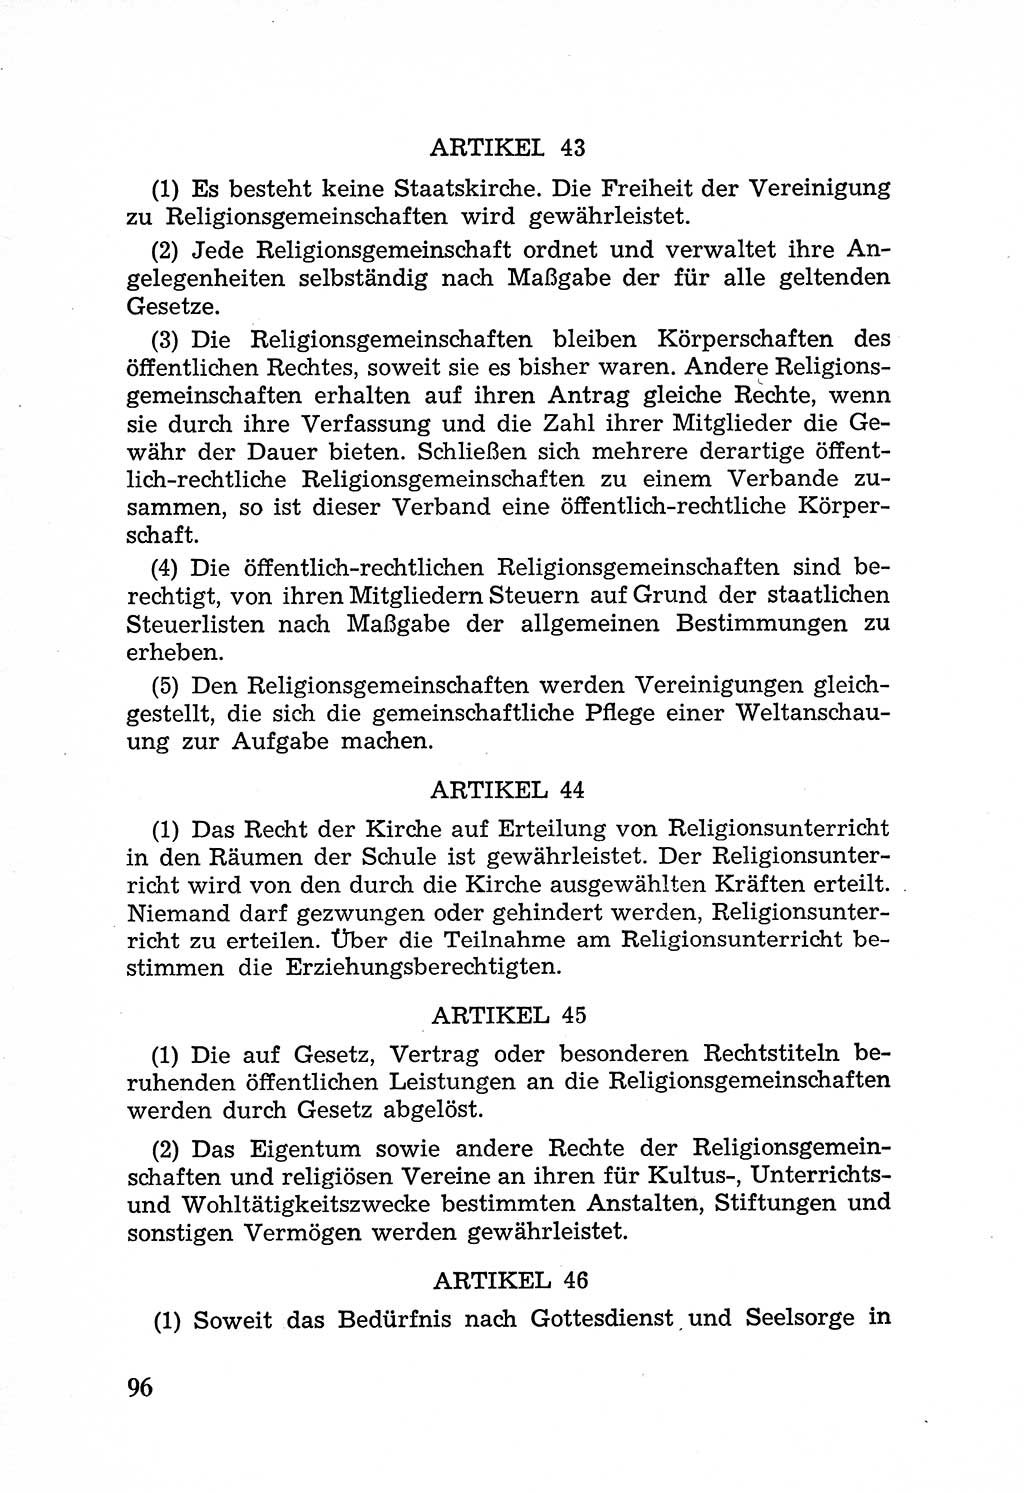 Rechtsstaat in zweierlei Hinsicht, Untersuchungsausschuß freiheitlicher Juristen (UfJ) [Bundesrepublik Deutschland (BRD)] 1956, Seite 96 (R.-St. UfJ BRD 1956, S. 96)